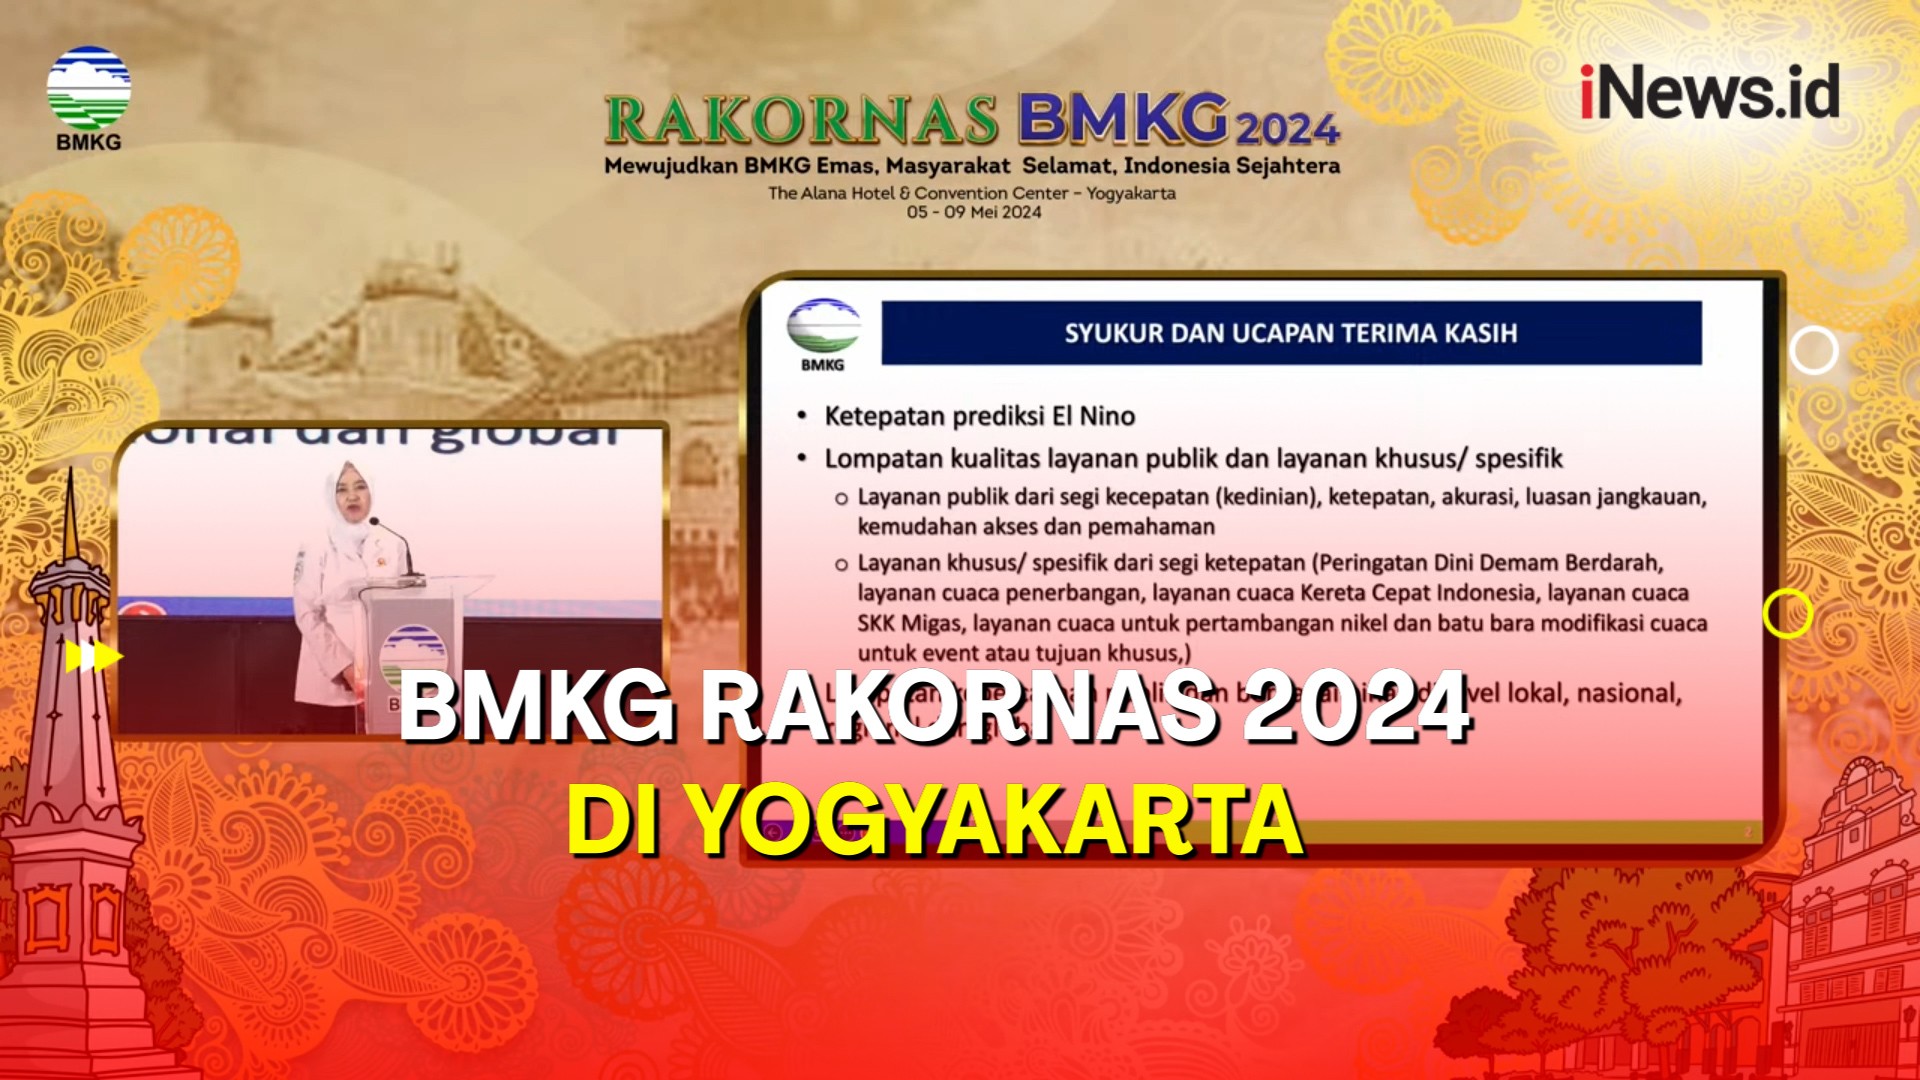  Rakornas 2024, BMKG Berkomitmen Tingkatkan Pelayanan dan Menuju Indonesia Emas 2024 